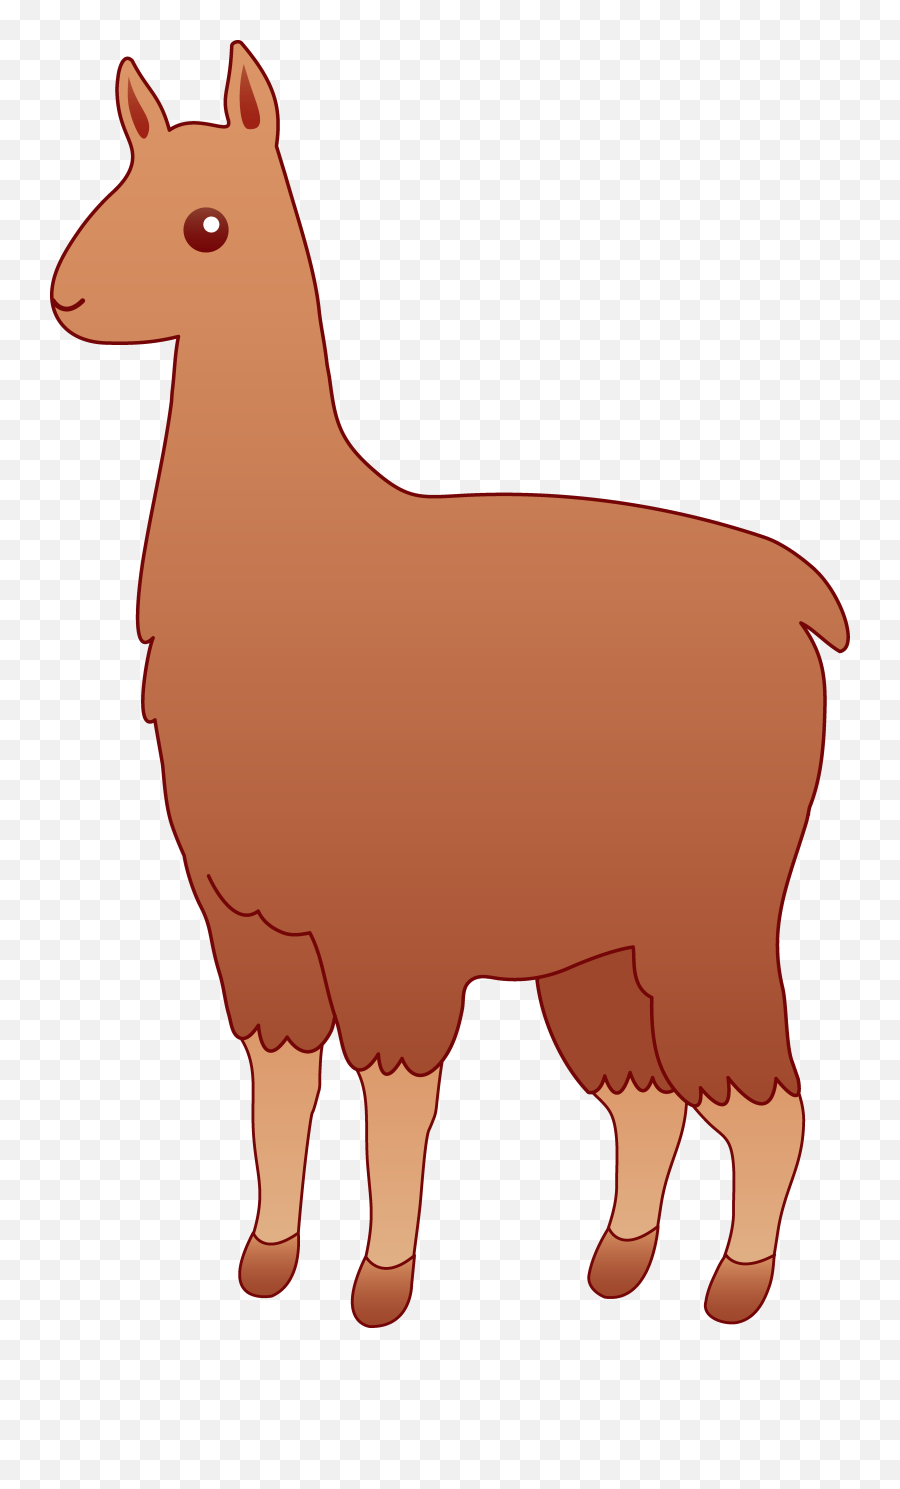 Llama Clipart 2 - Llama Clipart Transparent Background Emoji,Llama Clipart